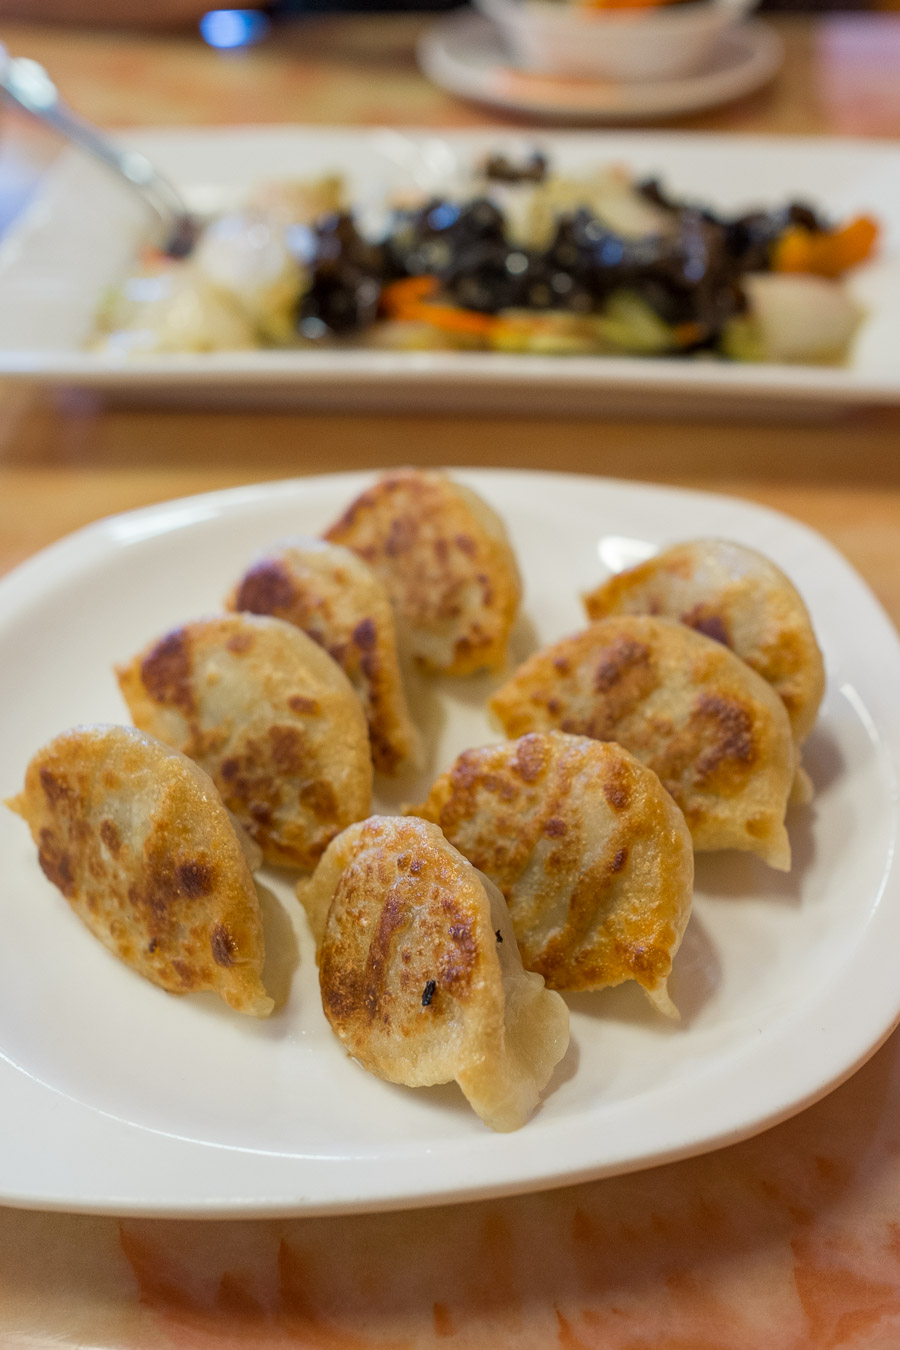 Fried dumplings